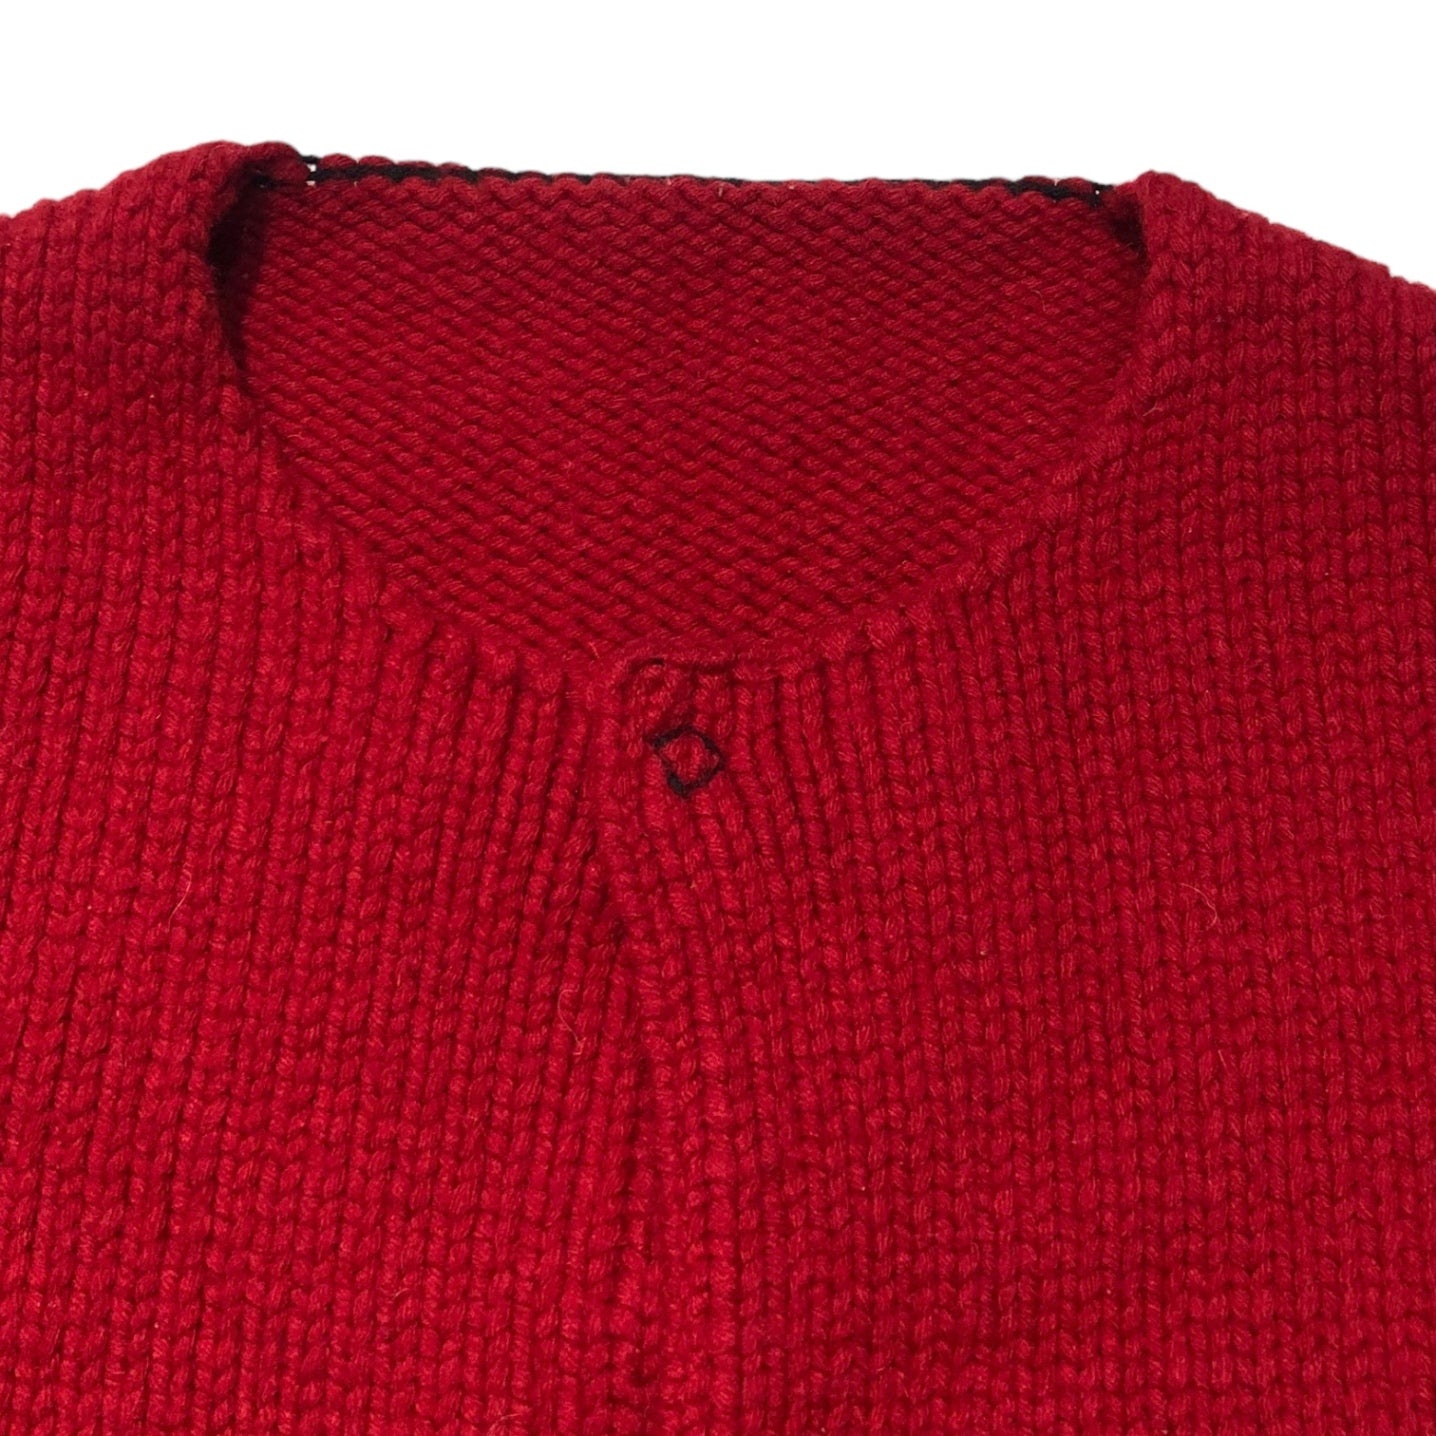 SUNSEA(サンシー) 17AW reversible knit cardigan リバーシブル ニット カーディガン - レッド